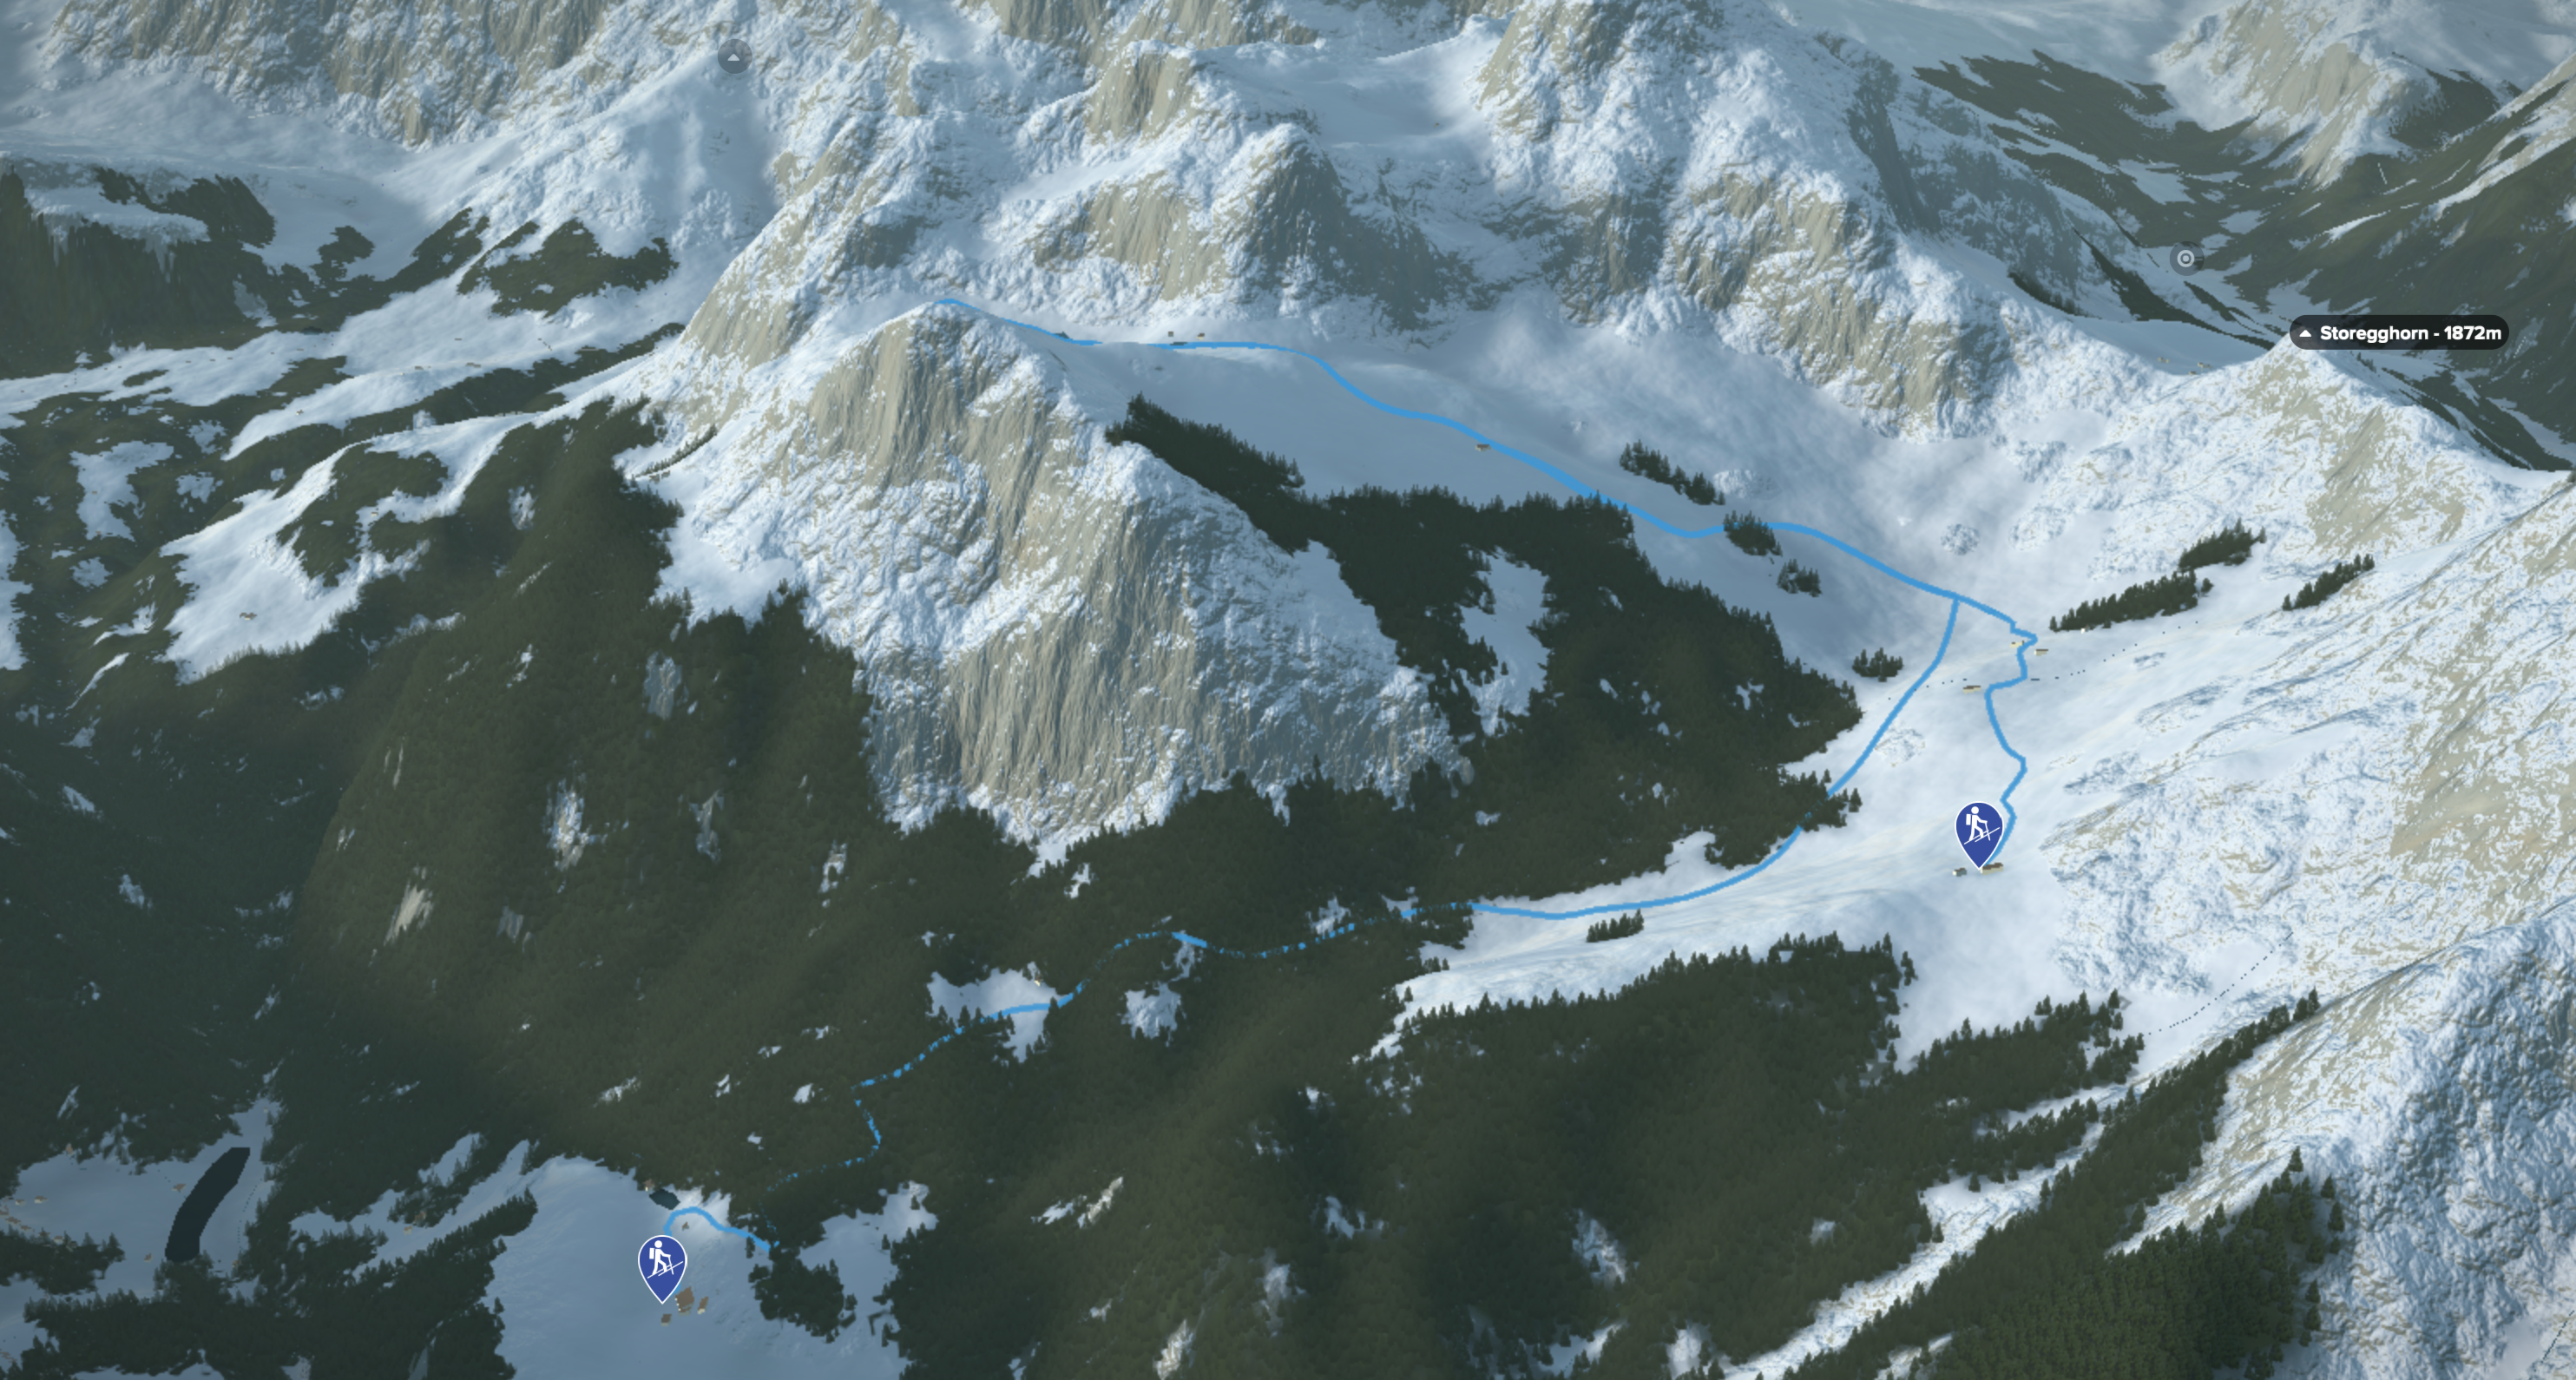 3D-Kartenausschnitt der Skitour auf den Salistock in den Urner Alpen